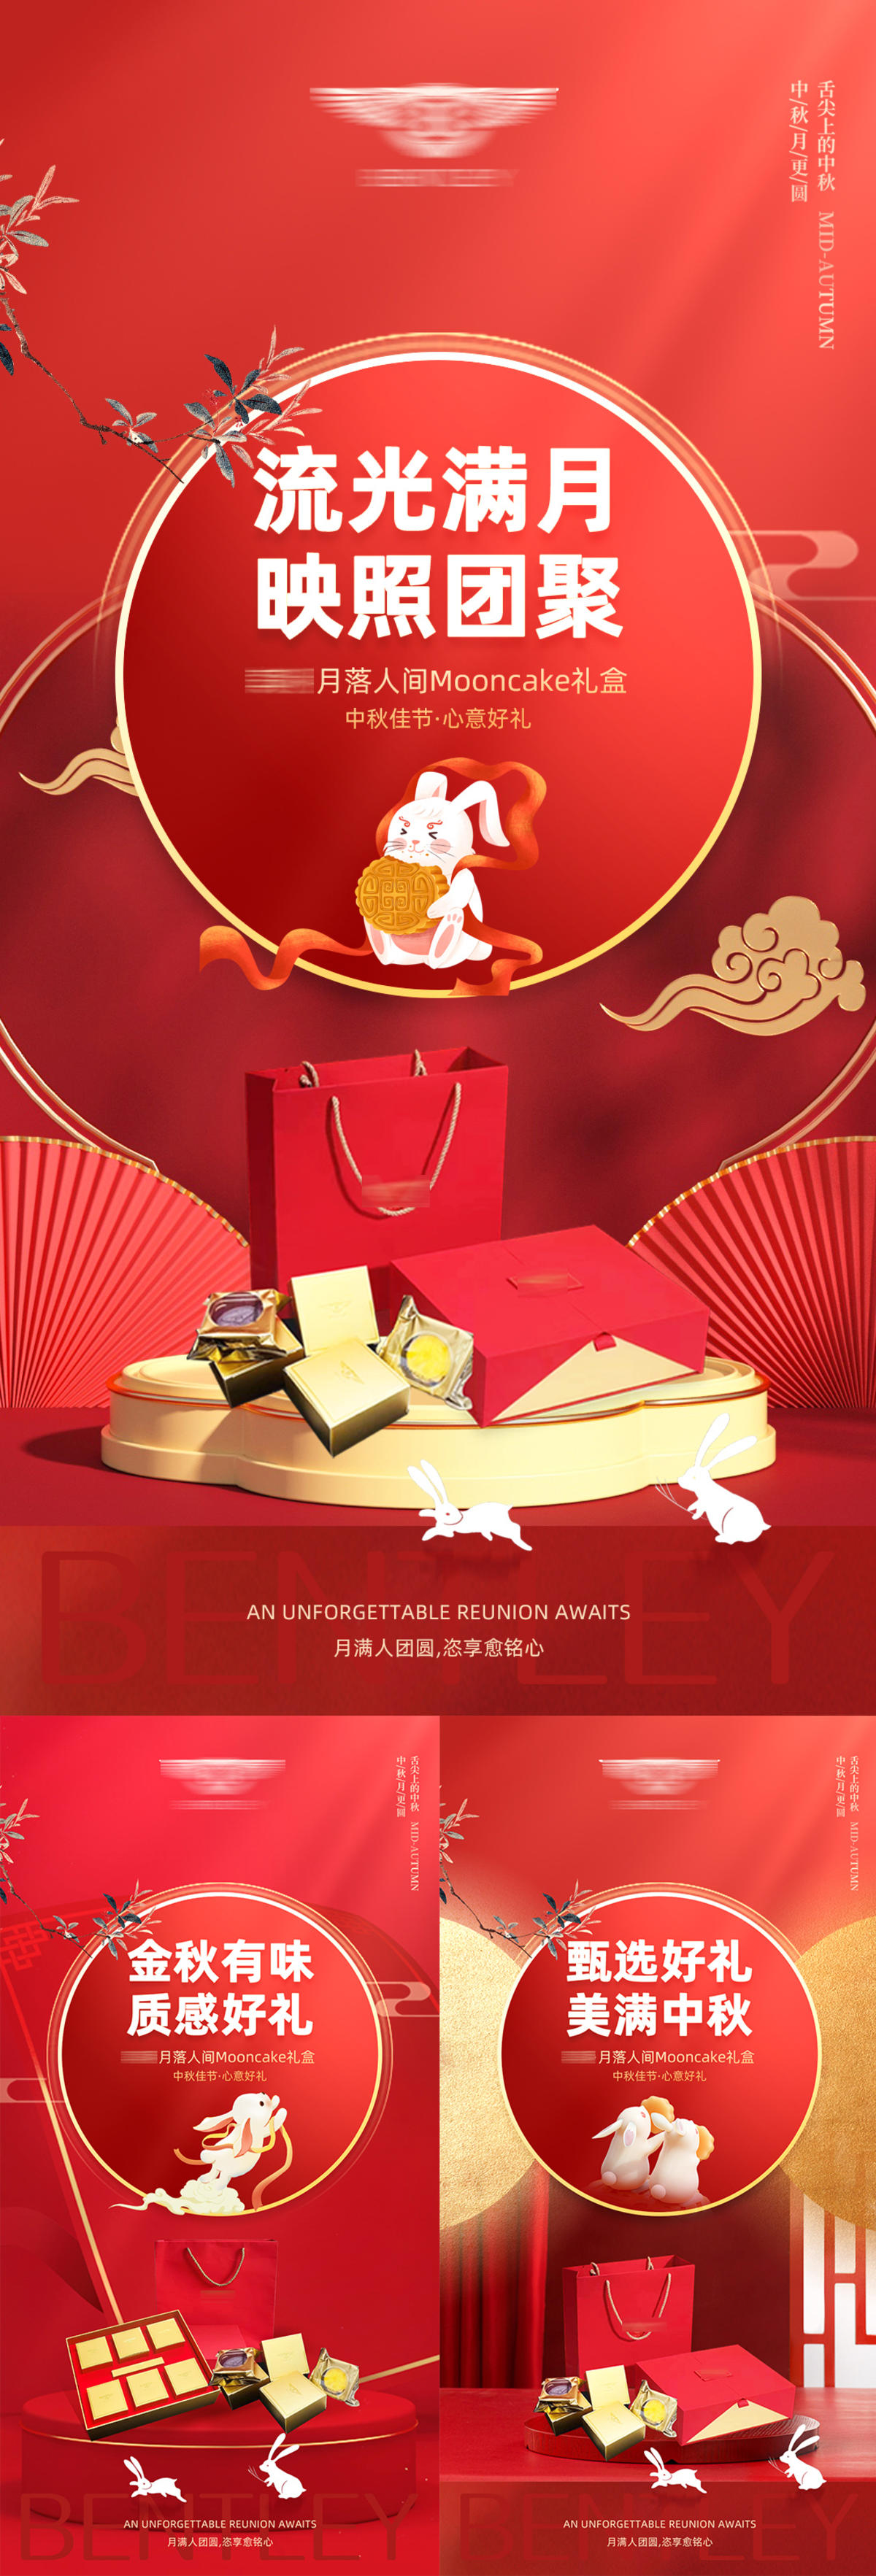 中秋节月饼礼品宣传海报